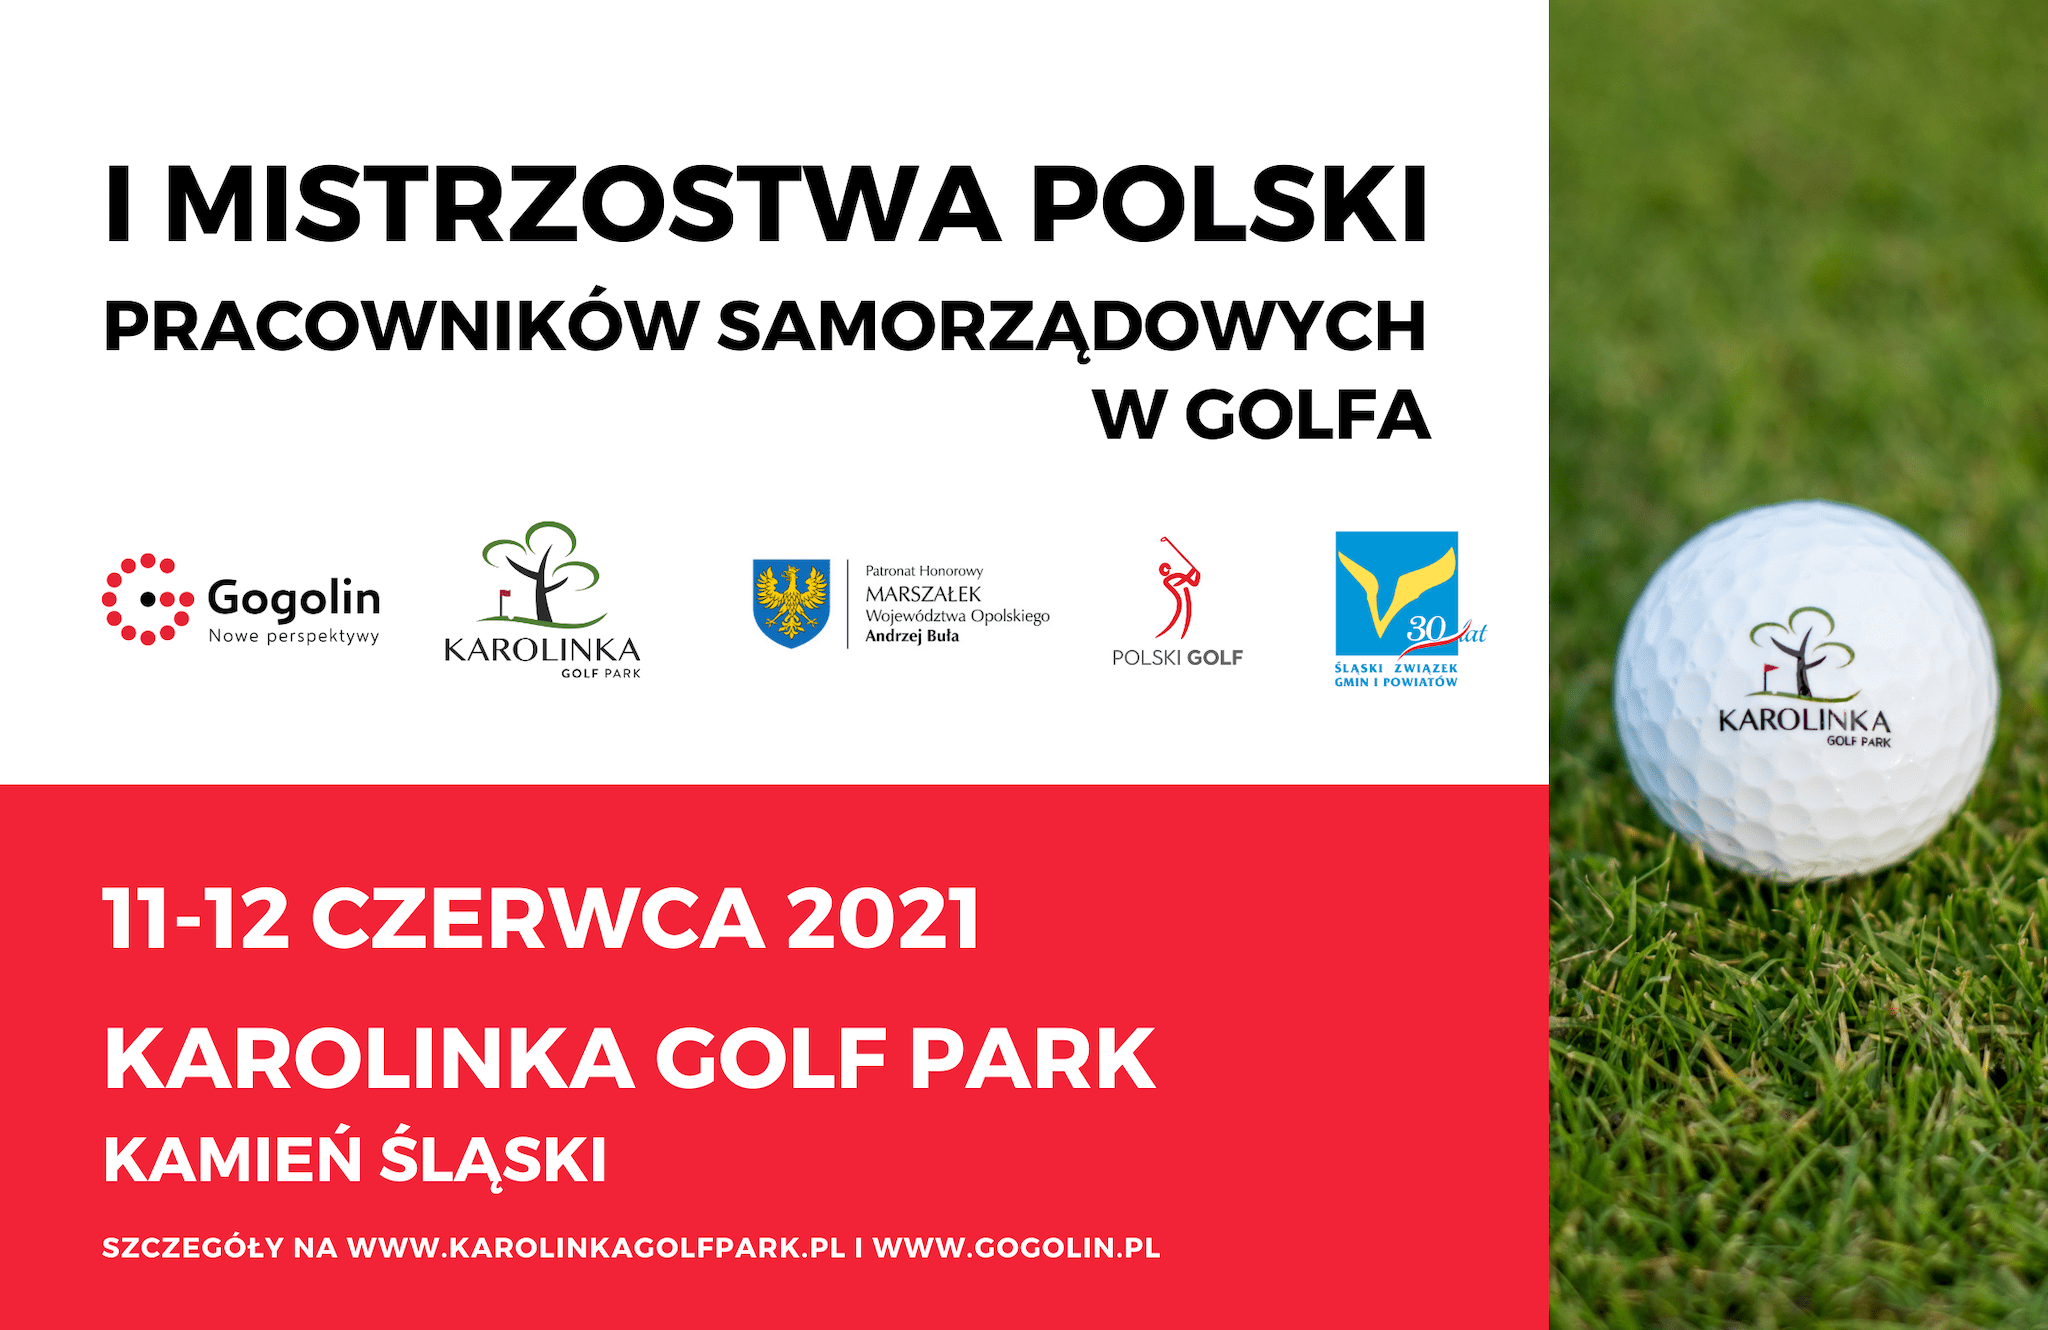 Mistrzostwa Polski Pracowników Samorządowych w Golfa